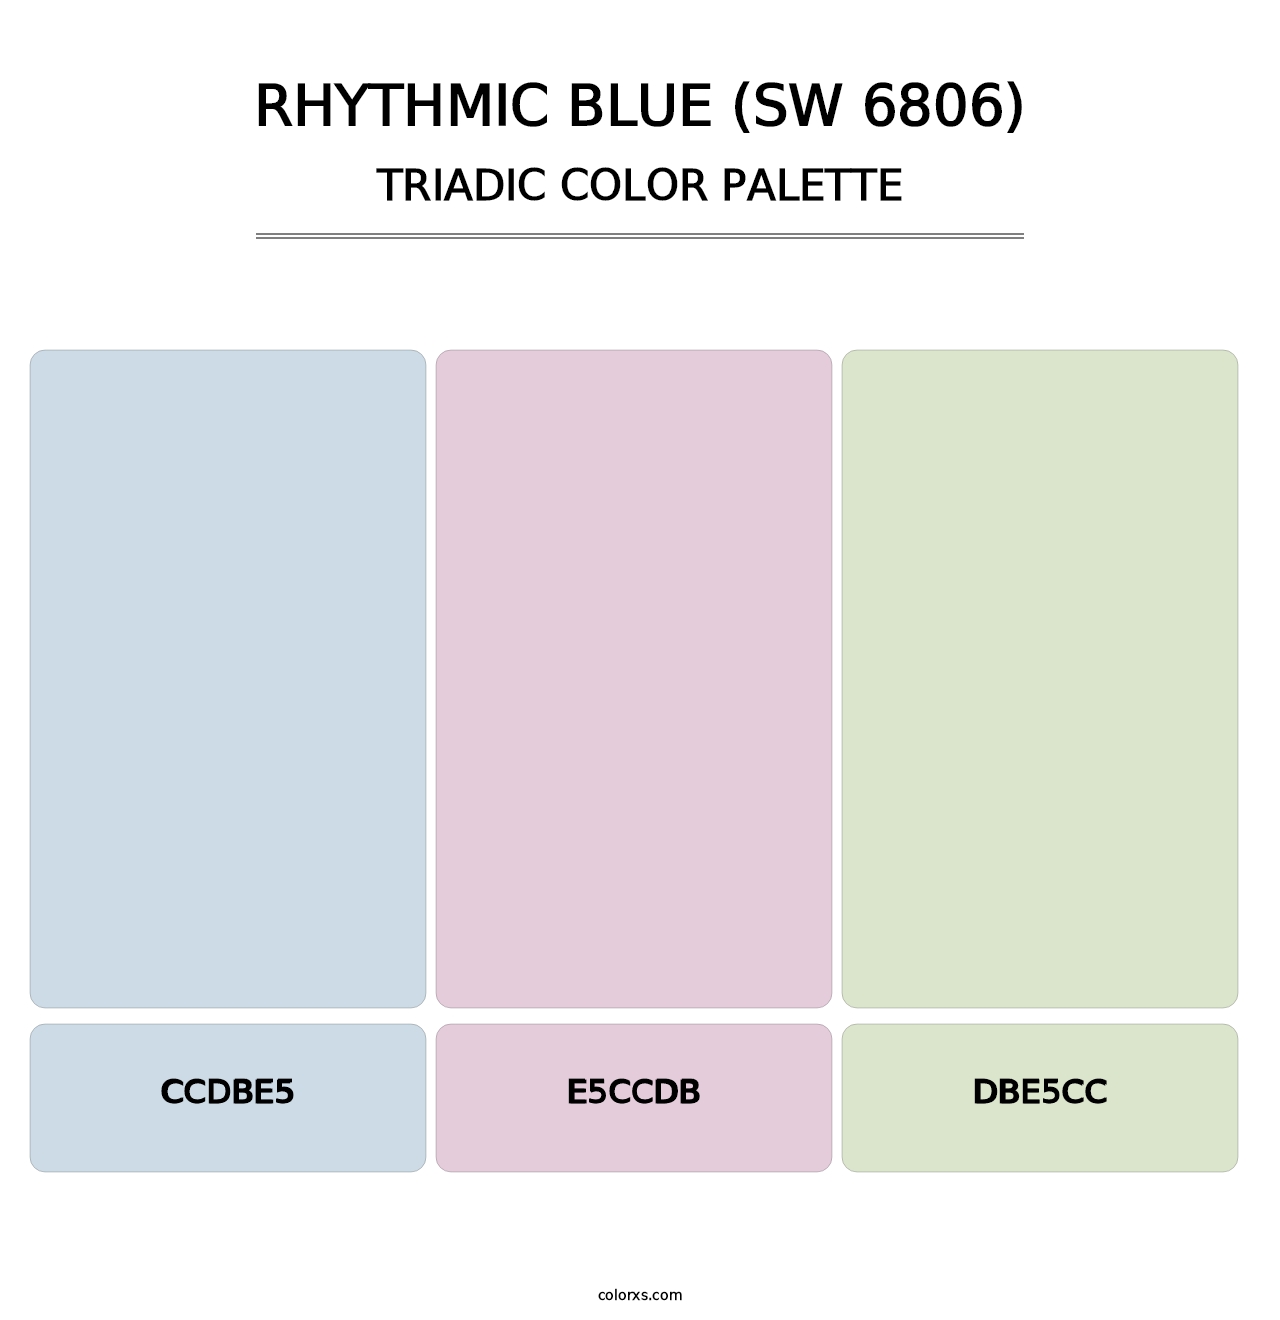 Rhythmic Blue (SW 6806) - Triadic Color Palette